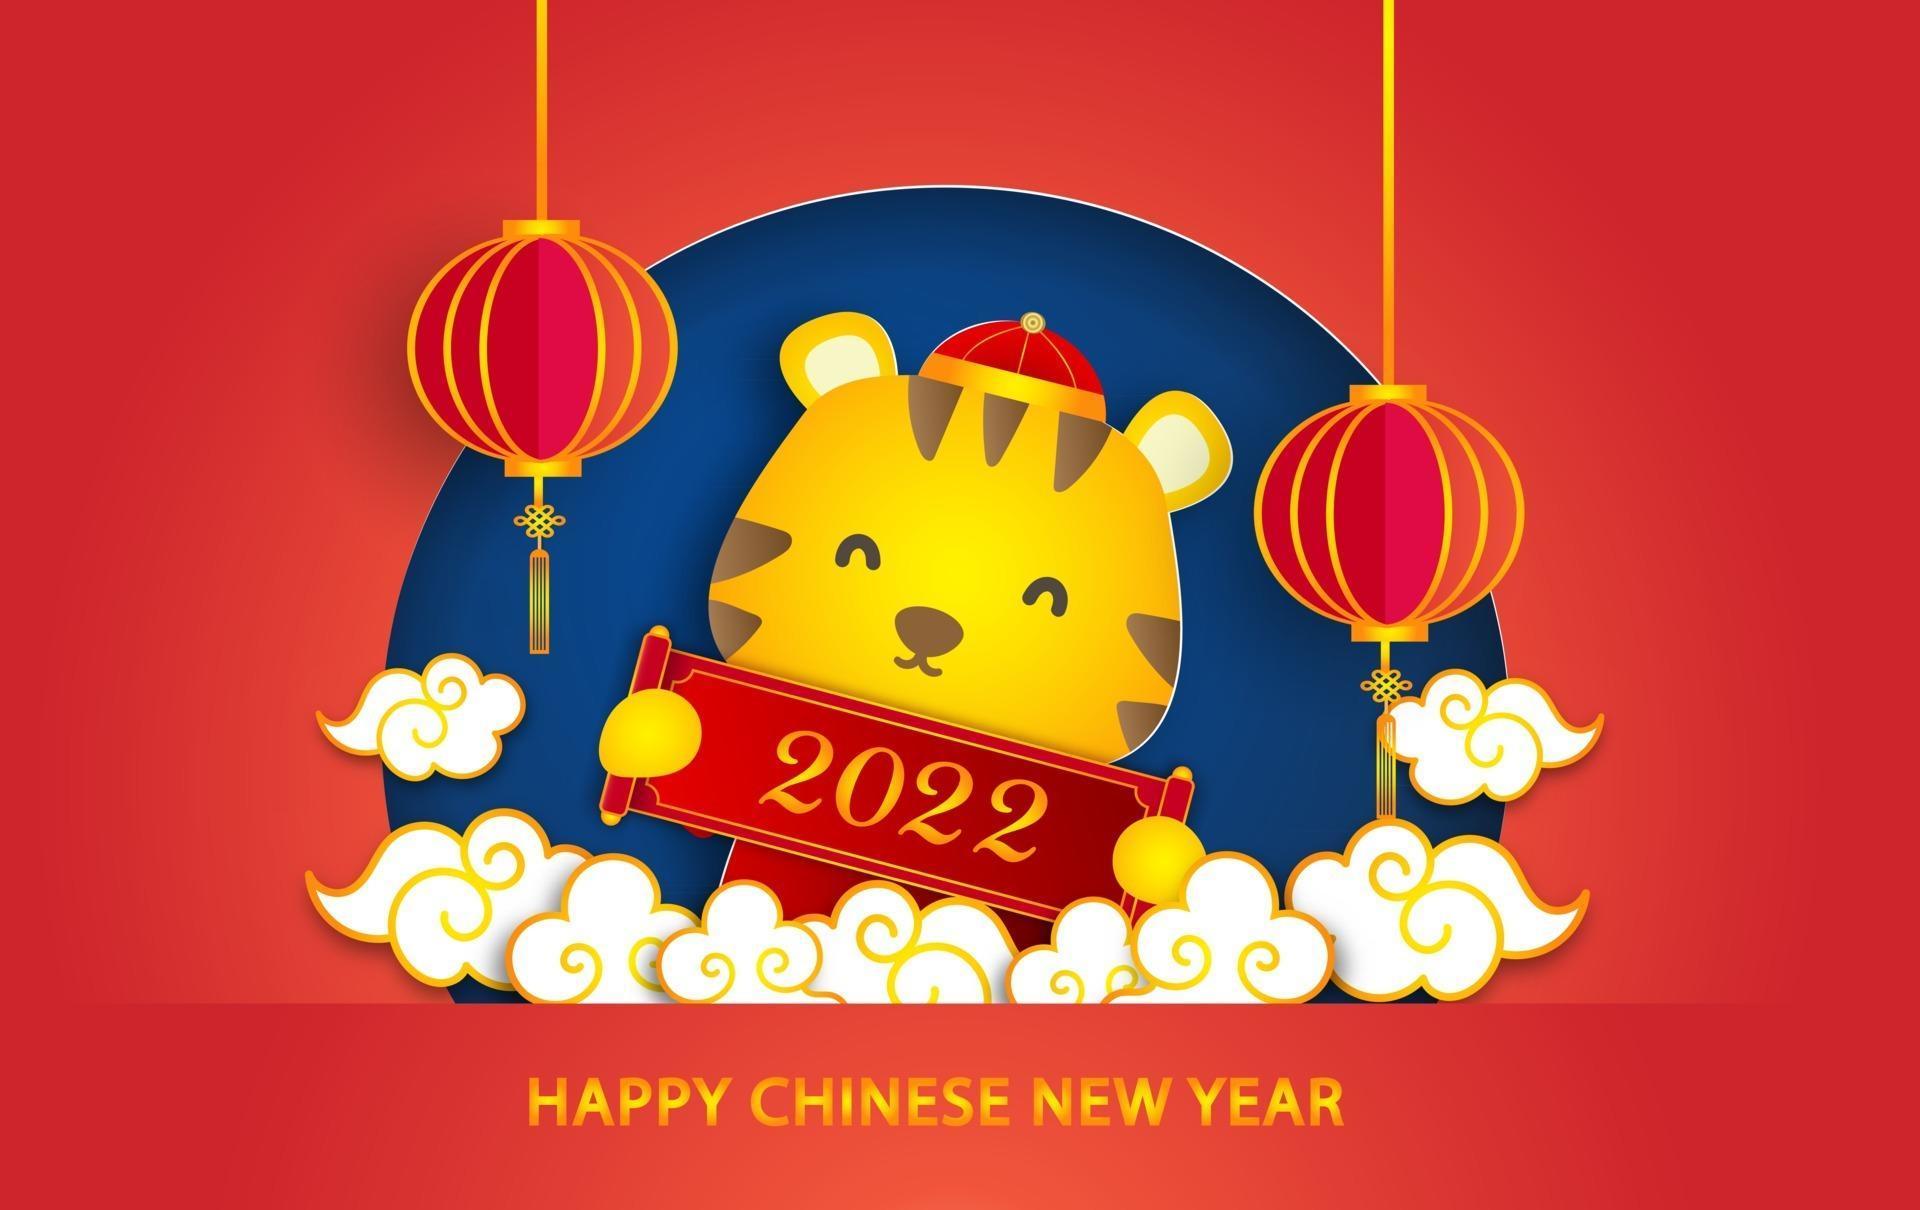 ano novo chinês 2022 ano do cartão do tigre em estilo de corte de papel vetor